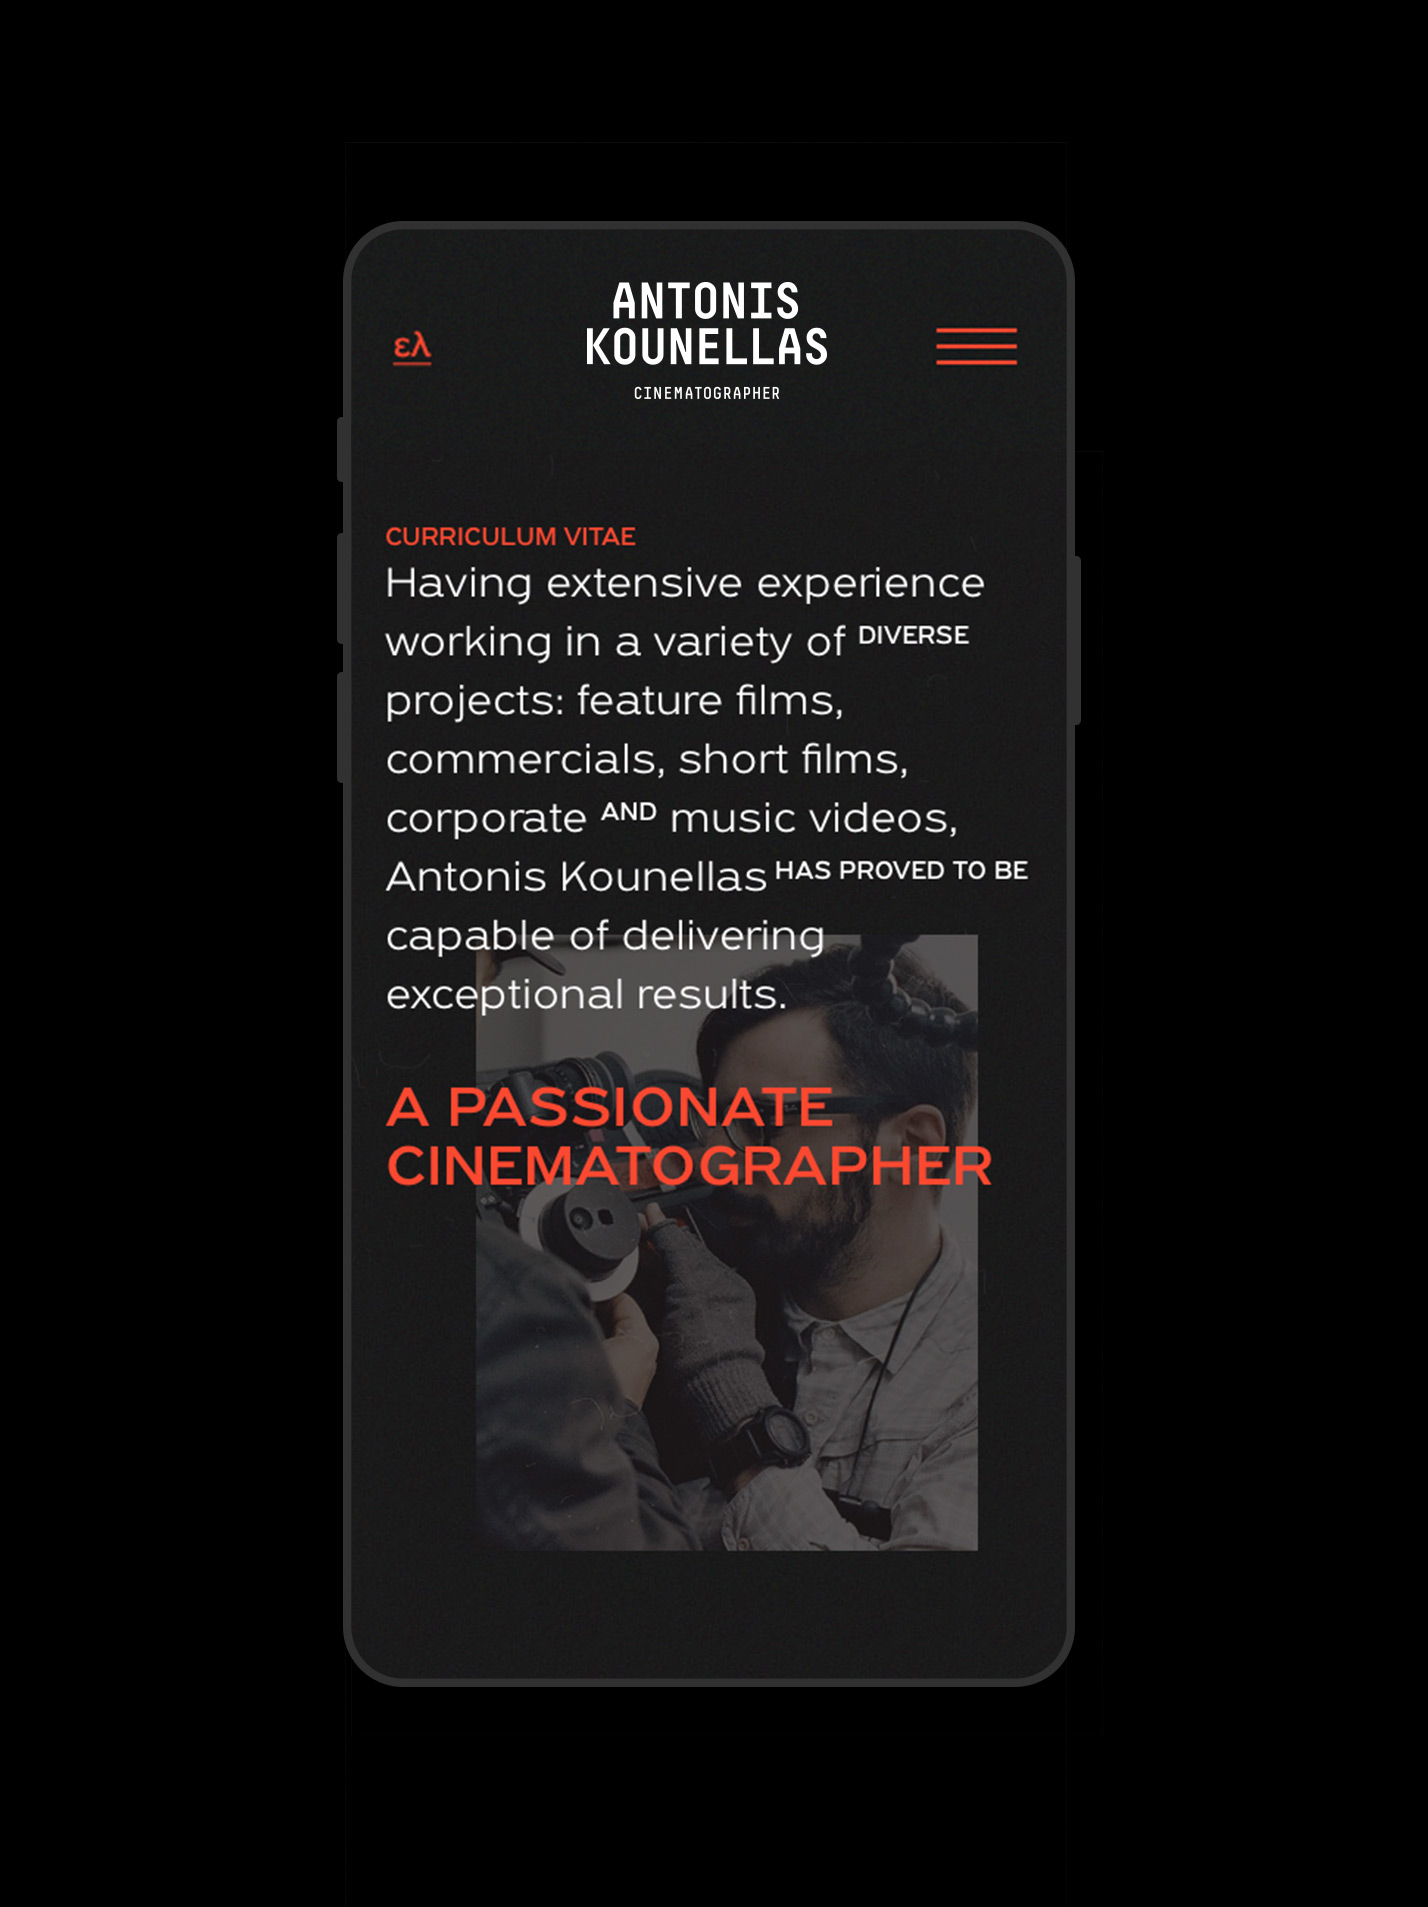 kounellas website design mobile 2 responsive kommigraphics